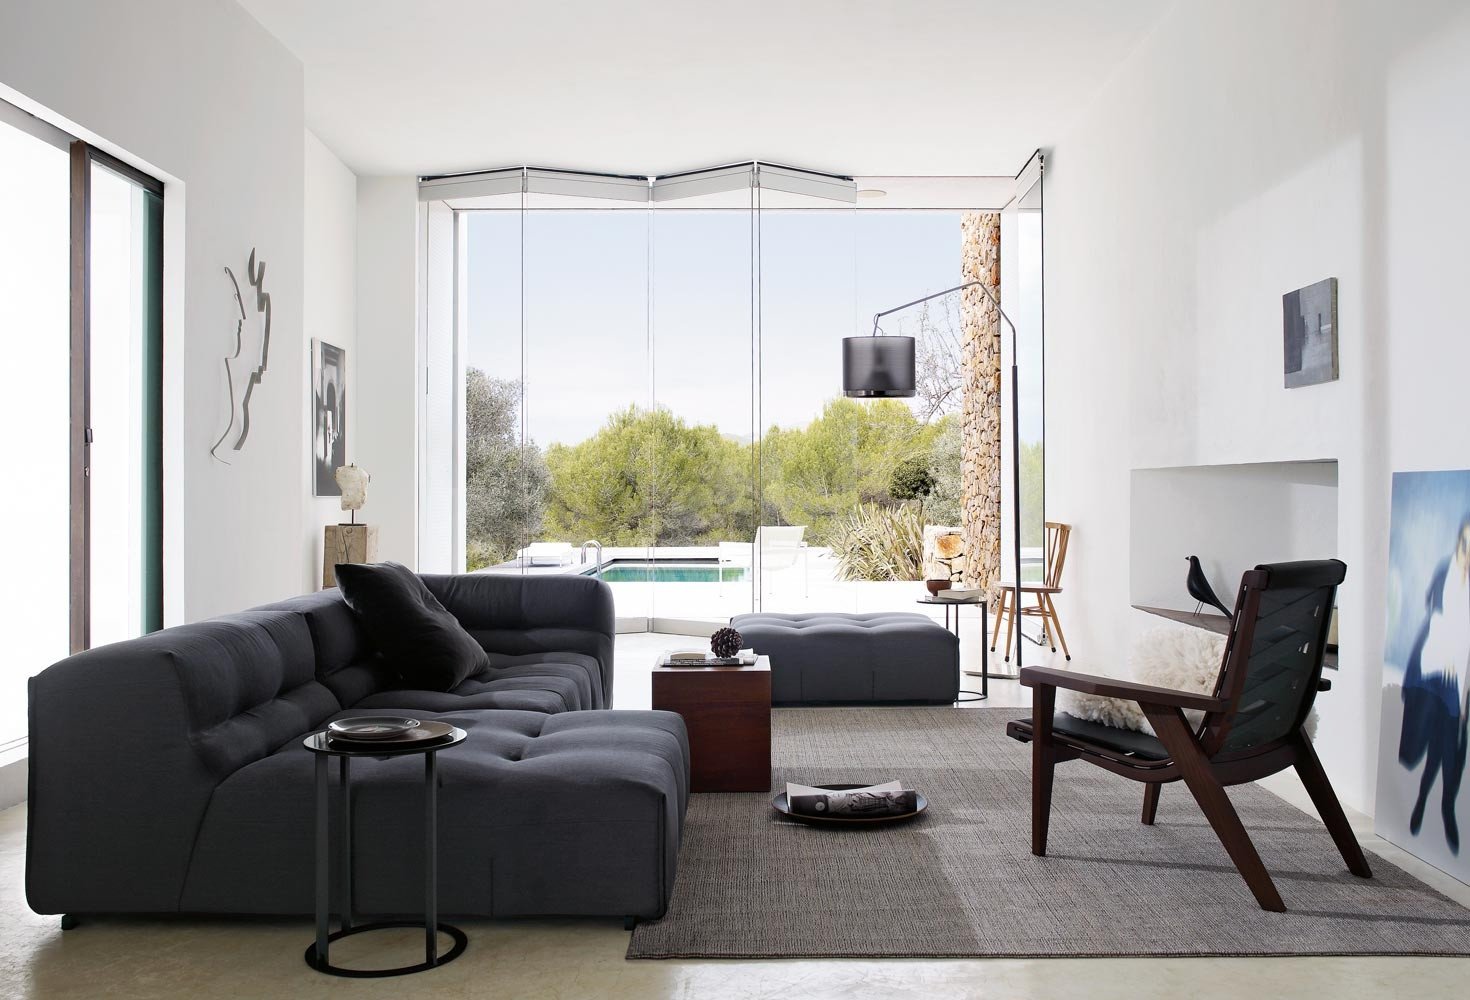 Living Room Ideas Furniture Interior Design Ideas Interior Designs Home Design Ideas